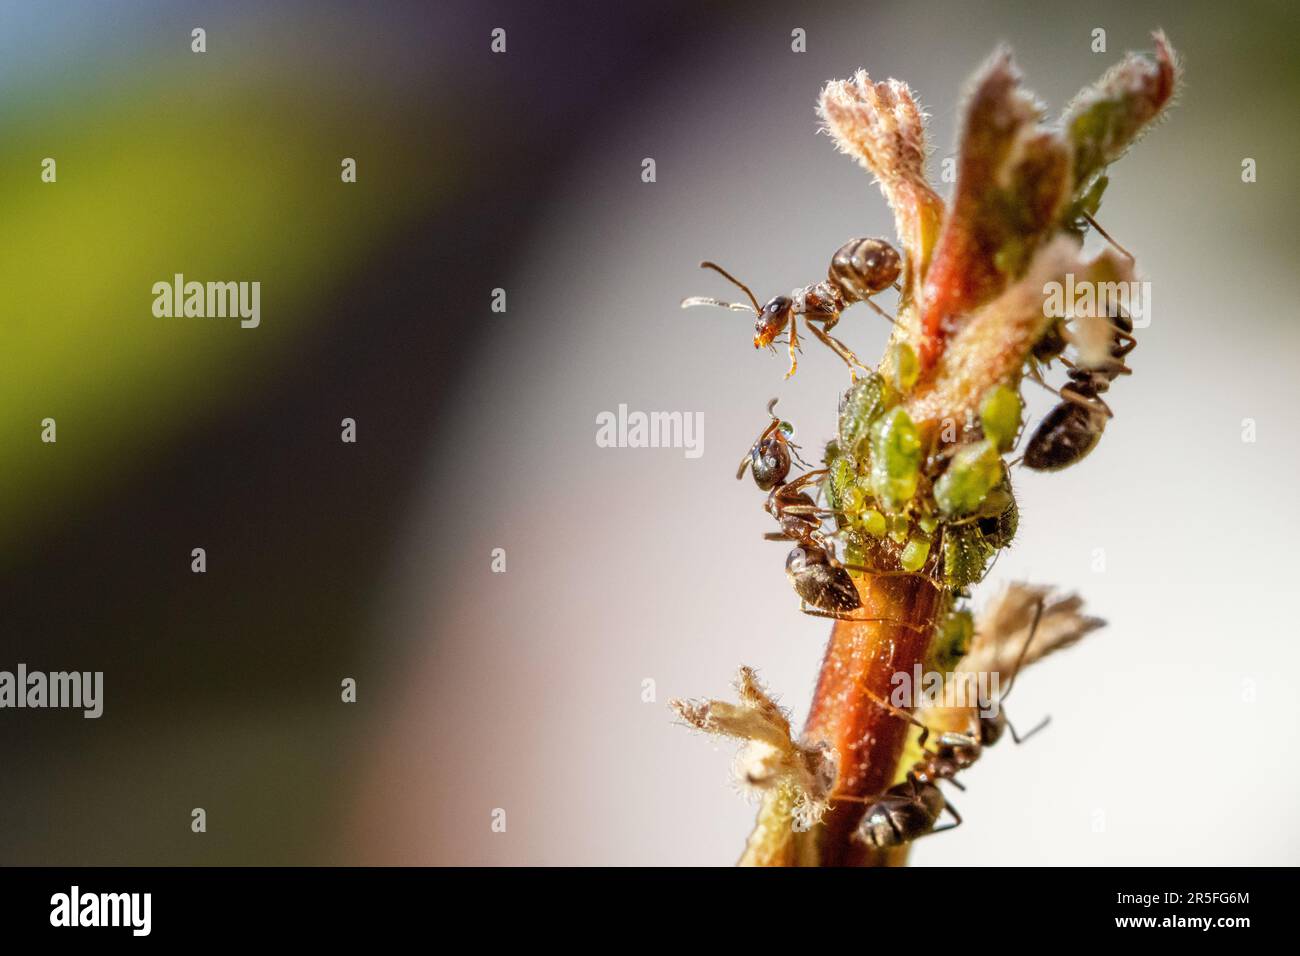 Sie züchten schwarze Gartenameise (Lasius niger), melkende grüne Blattläuse, wobei zwei Ameisen eine Auseinandersetzung über Honigtau hatten. Burley-in-Wharfedale, West Yorkshire Stockfoto